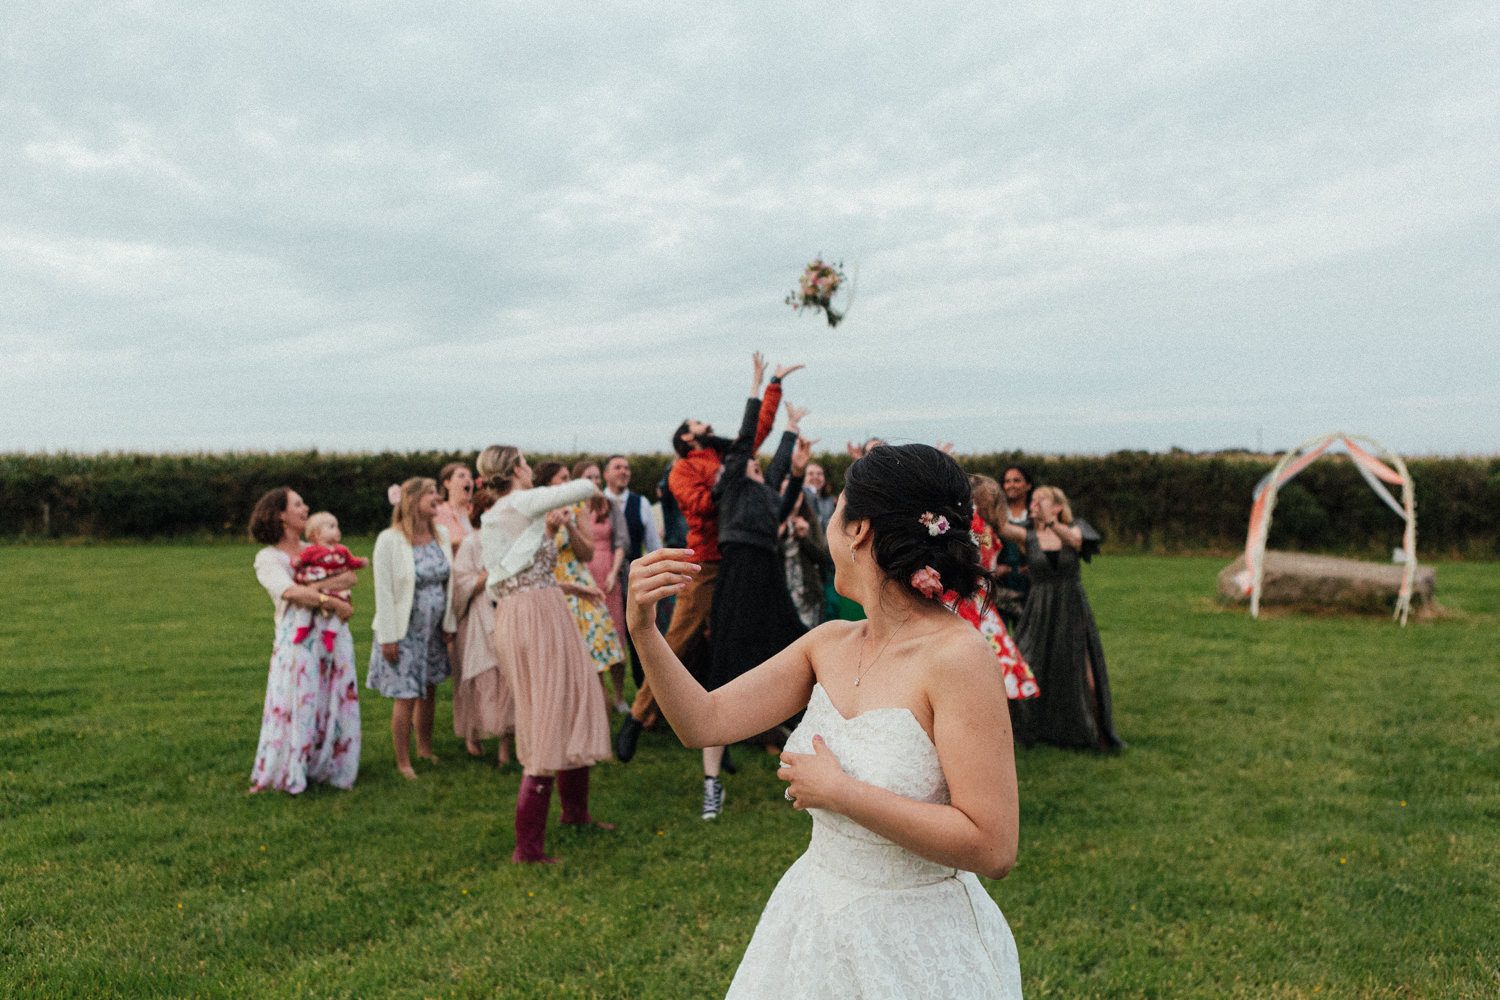 Tremorna Farm Wedding Photographer, Tremorna farm, bouquet throw, wedding guests, Cornwall wedding, Cornwall wedding photographer, wedding photographer Cornwall